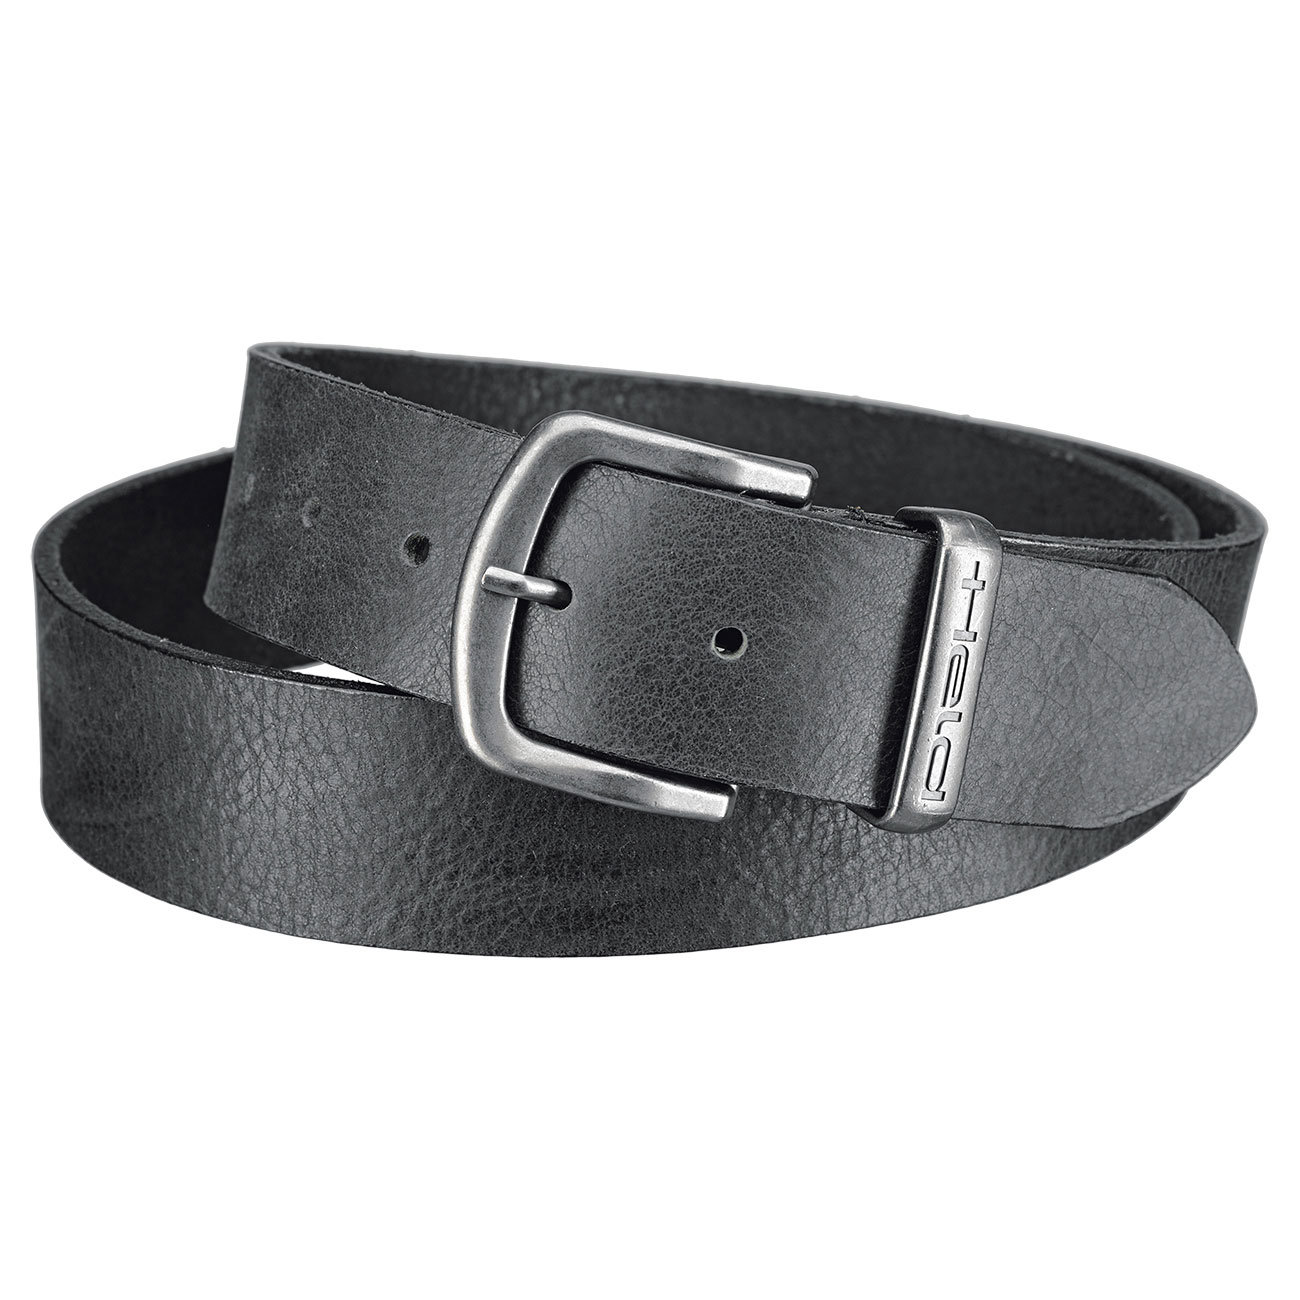 Belt men Leather belt